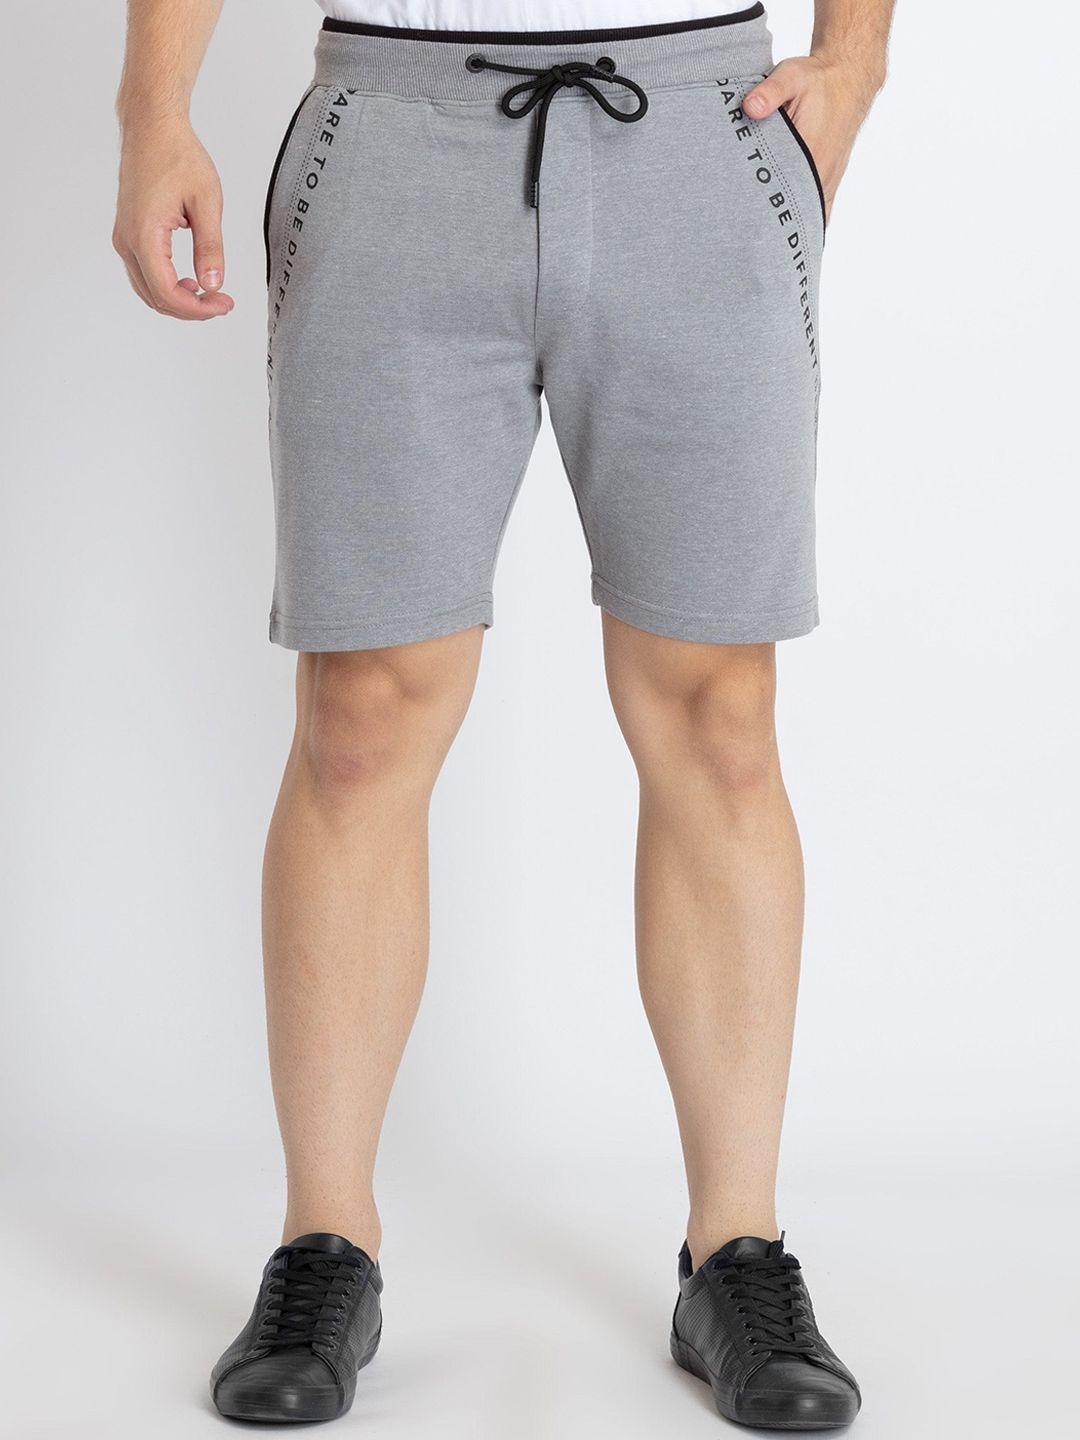 status quo men mid-rise regular shorts